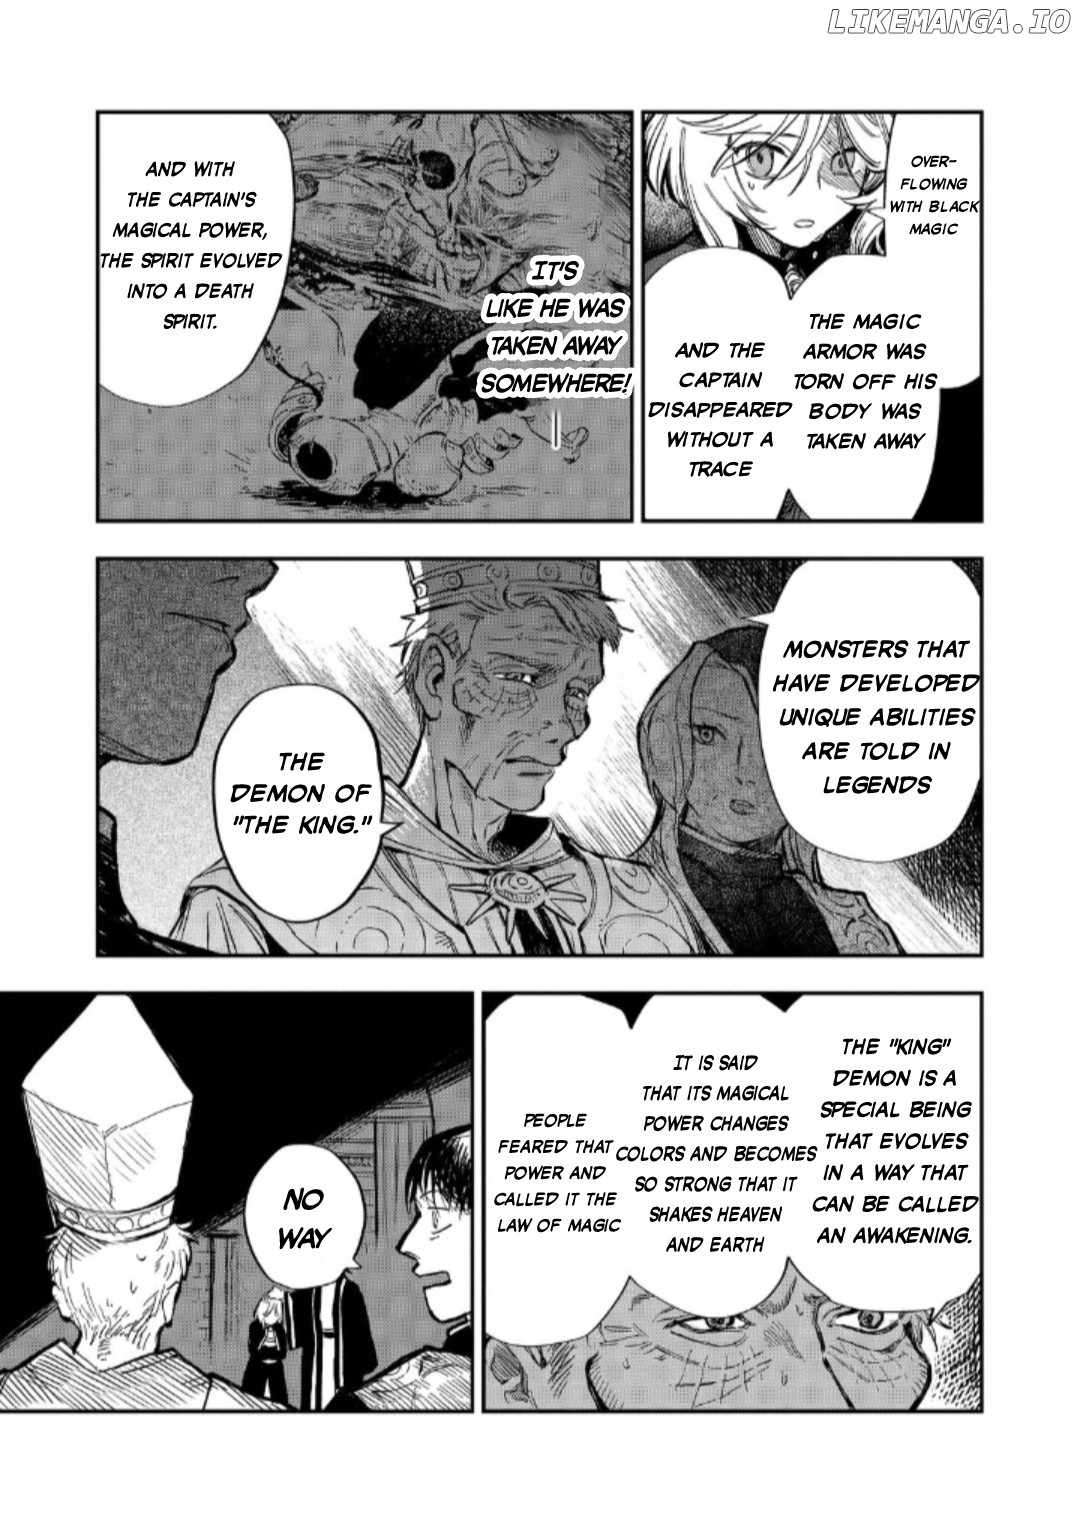 Meiou-sama ga Tooru no desu yo! Chapter 13-eng-li - Page 11